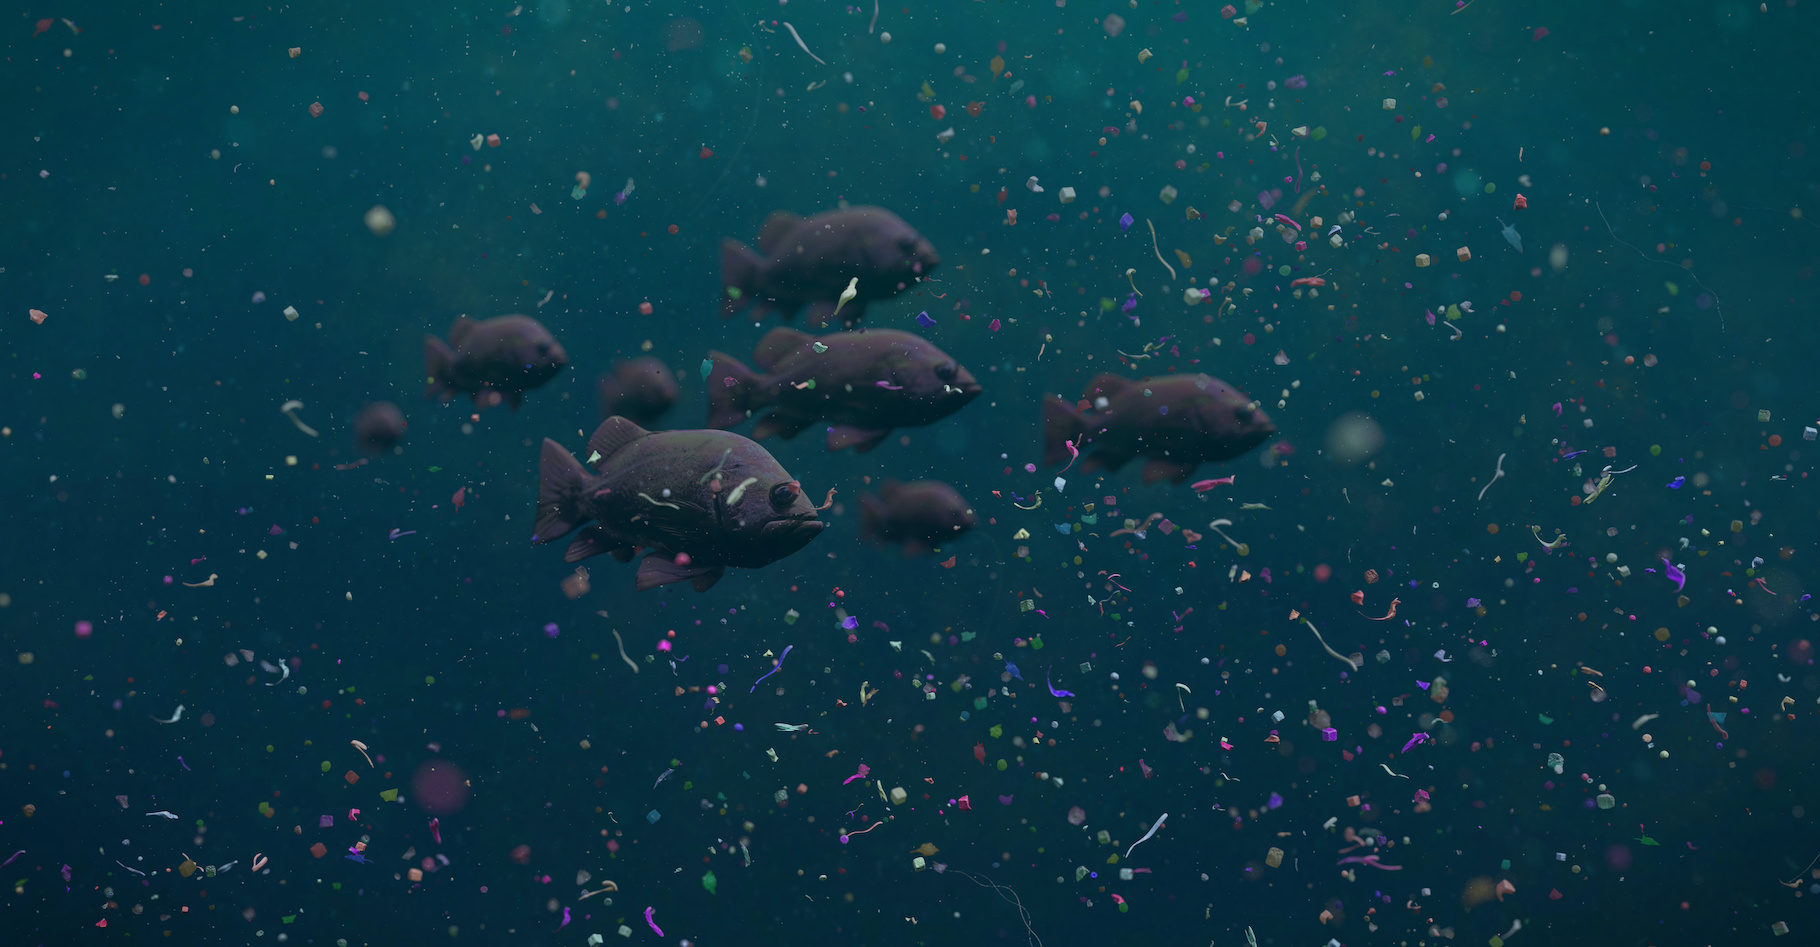 Ces poissons-là nagent dans un océan de déchets plastiques. Mais le petit robot, lui aussi en forme de poisson, inventé par une équipe de l’université du&nbsp;Sichuan (Chine) pourrait bien aider à nettoyer leur environnement. © dottecyeti, Adobe Stock